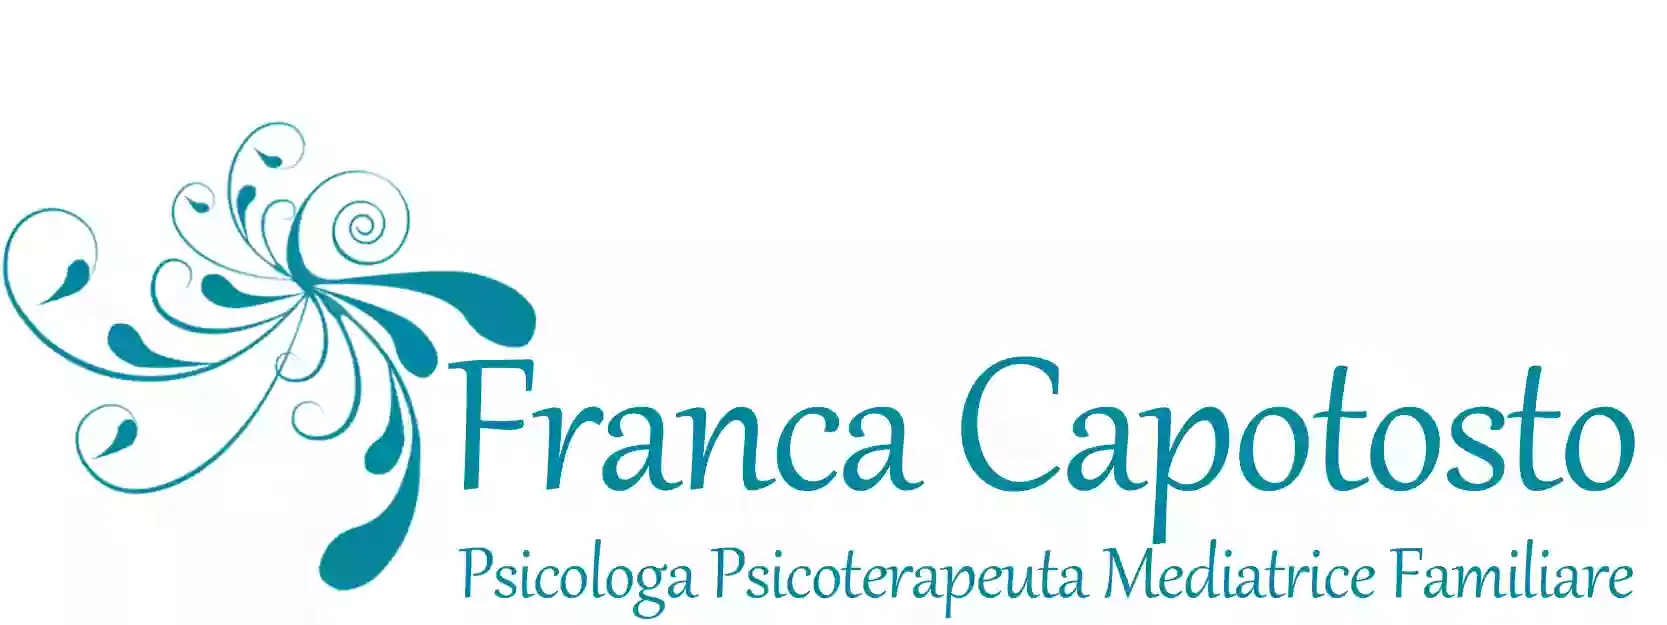 Franca Capotosto Psicologa - Psicoterapeuta